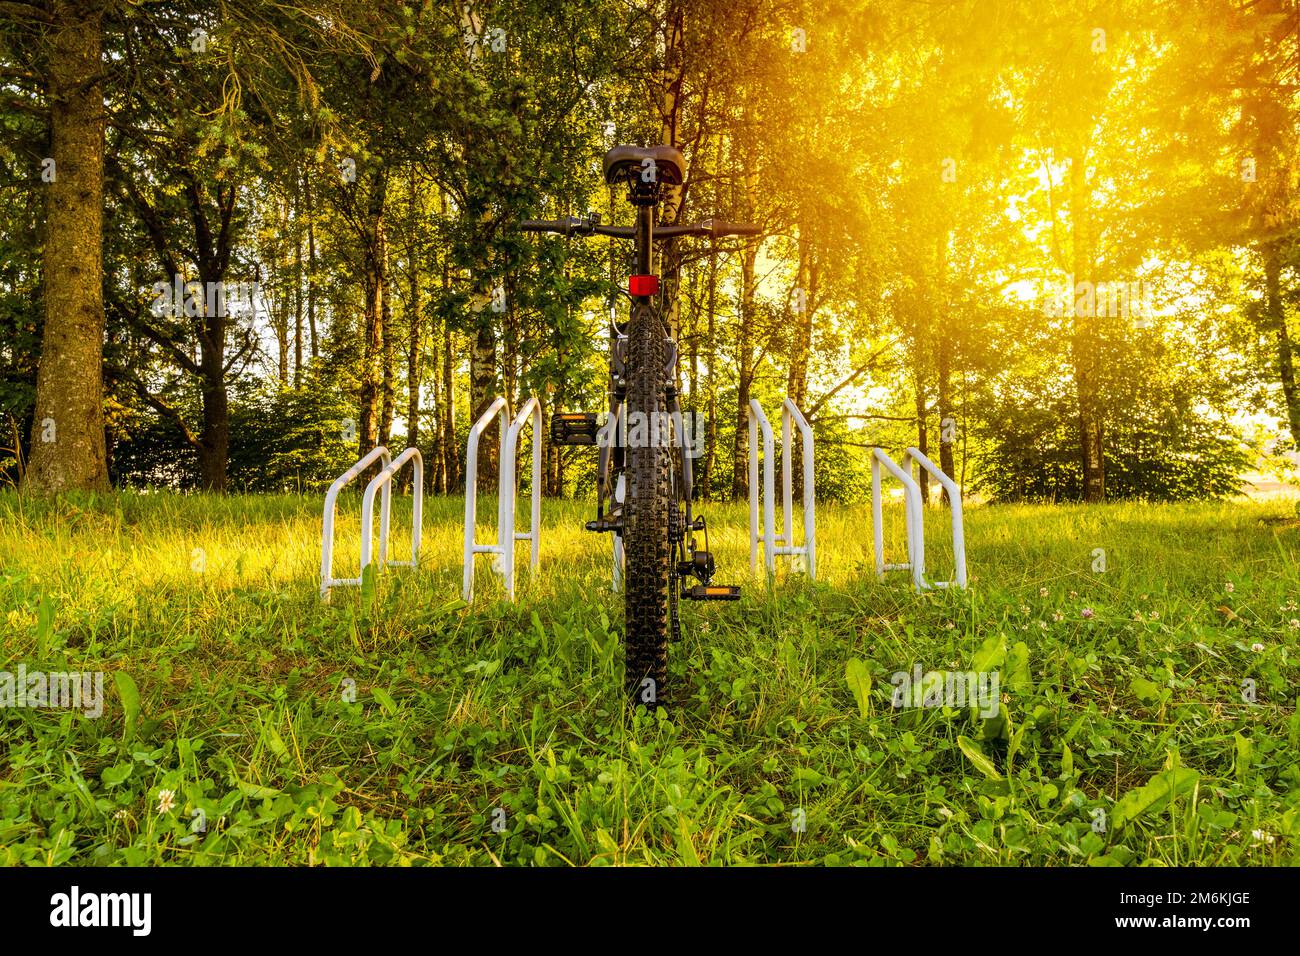 Vélo stationné dans une forêt Banque D'Images